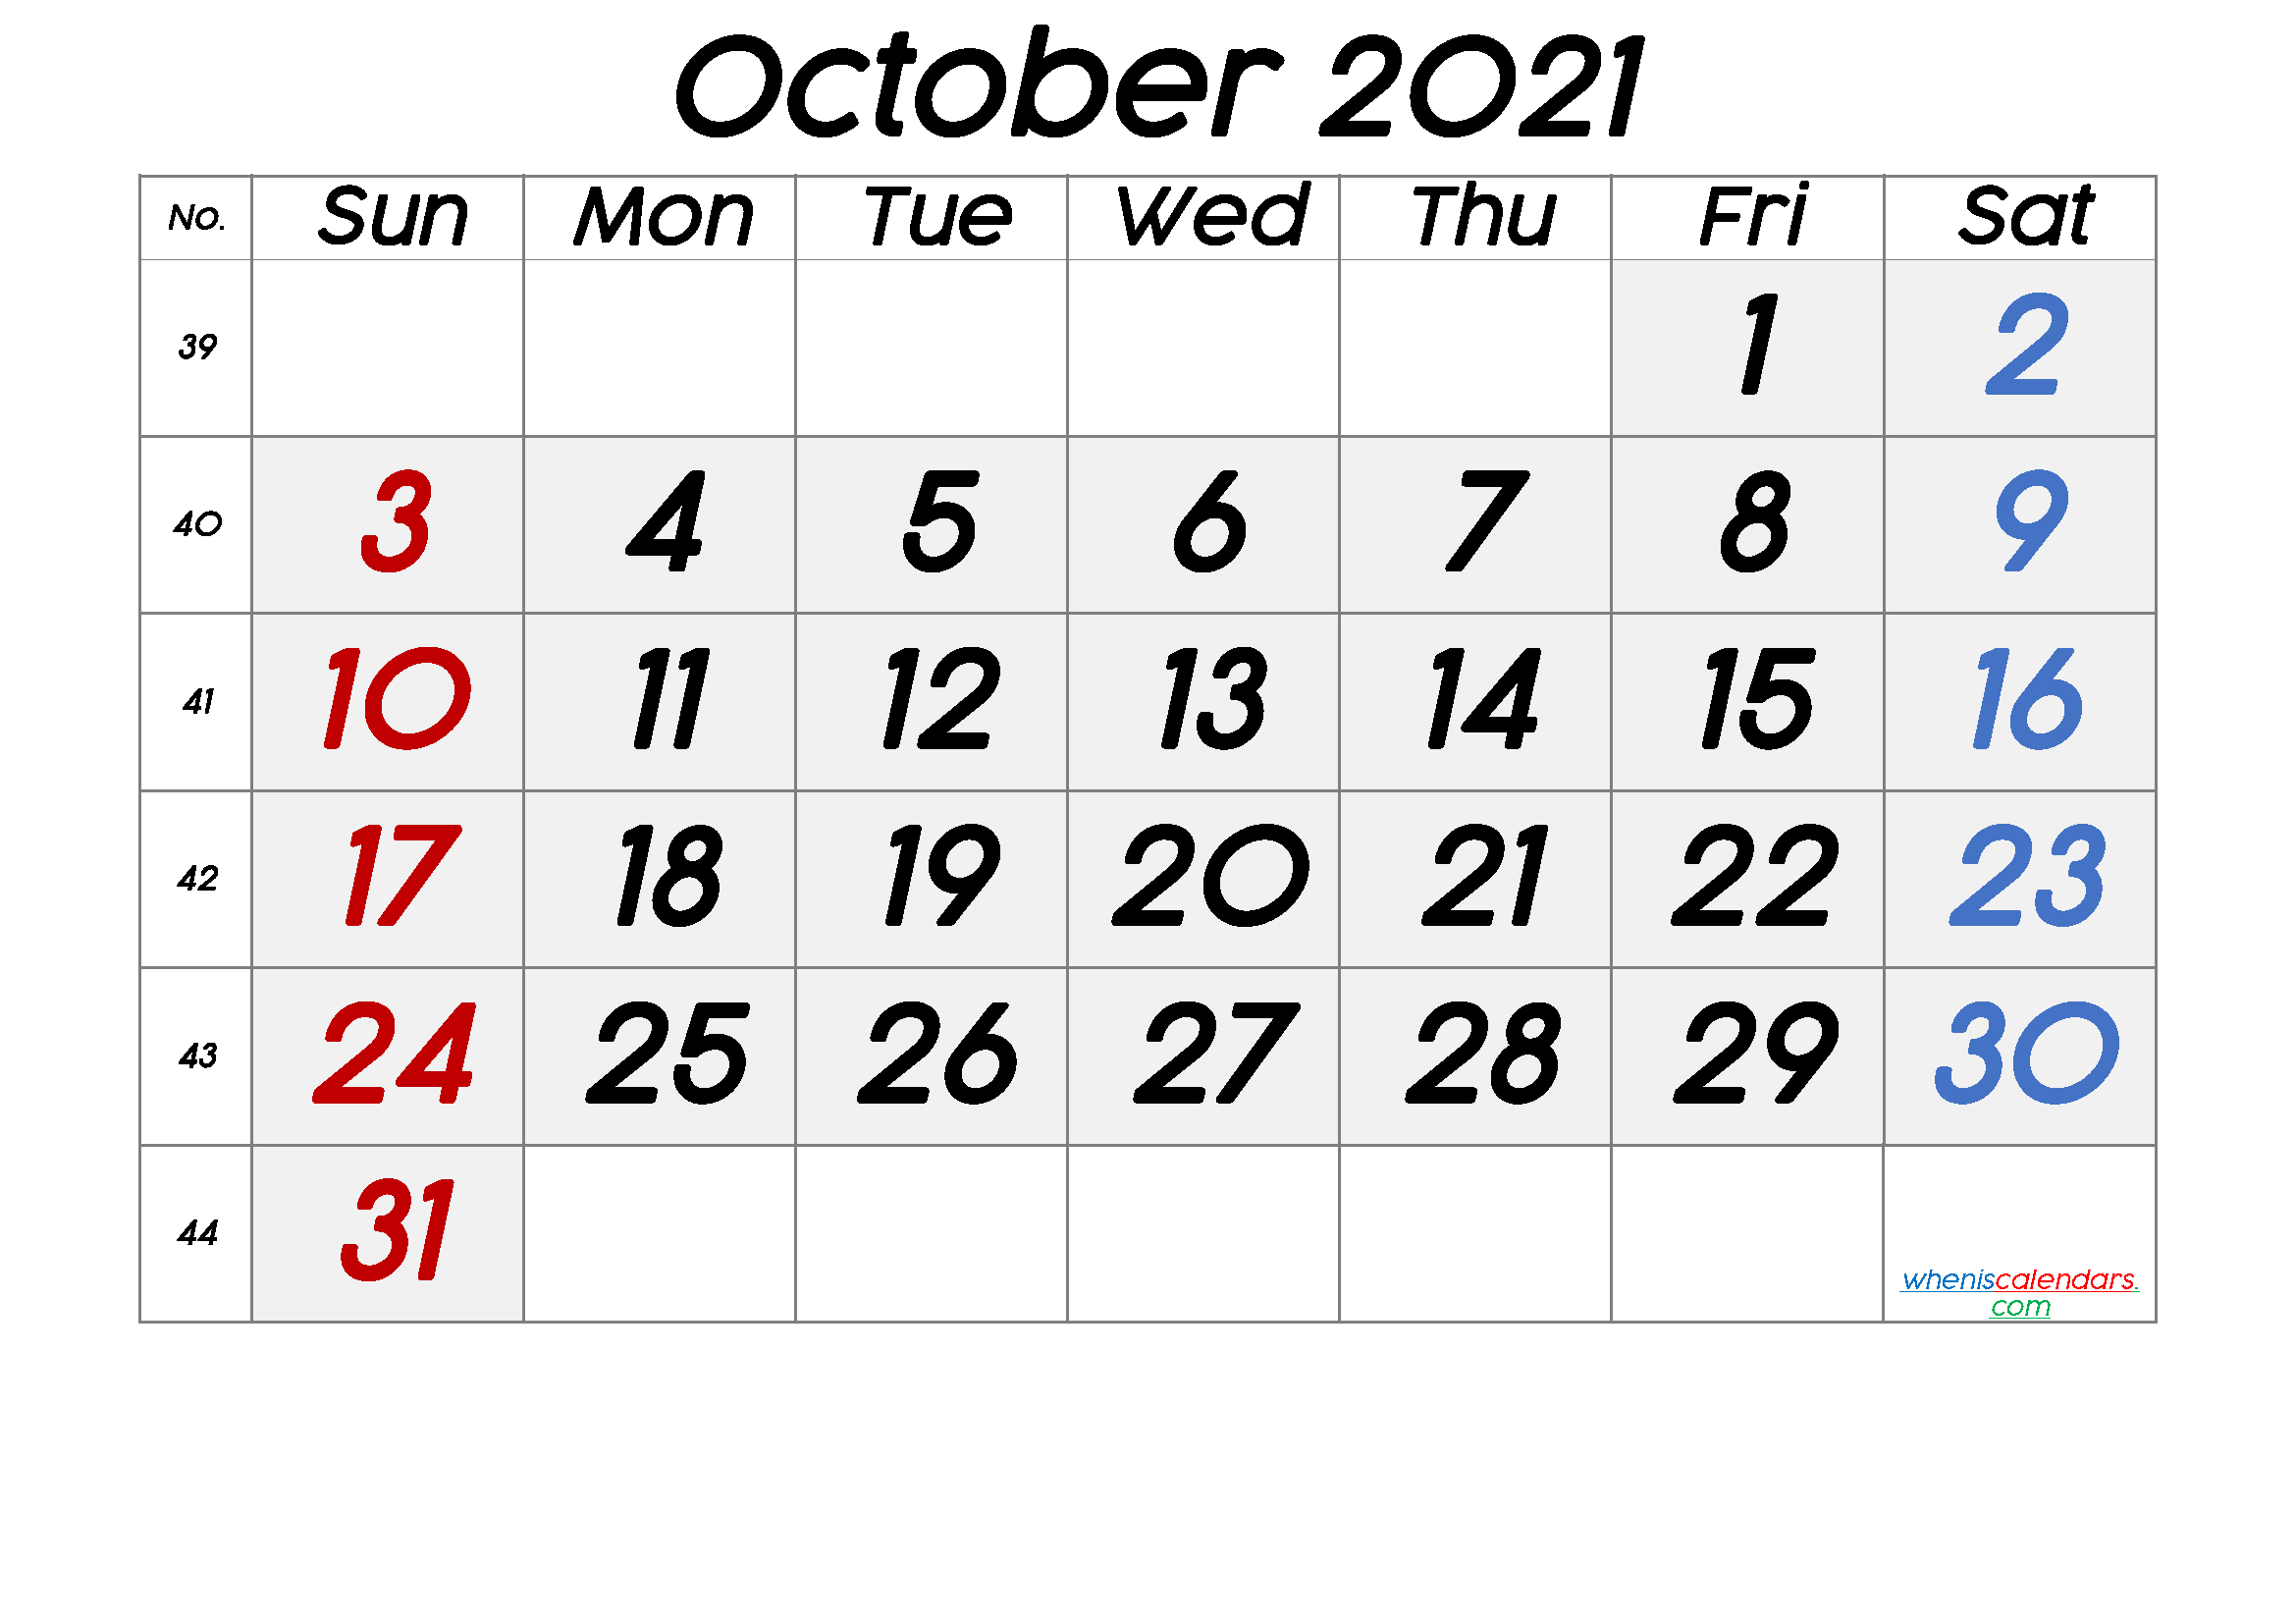 October 2021 Printable Calendar With Week Numbers [Free